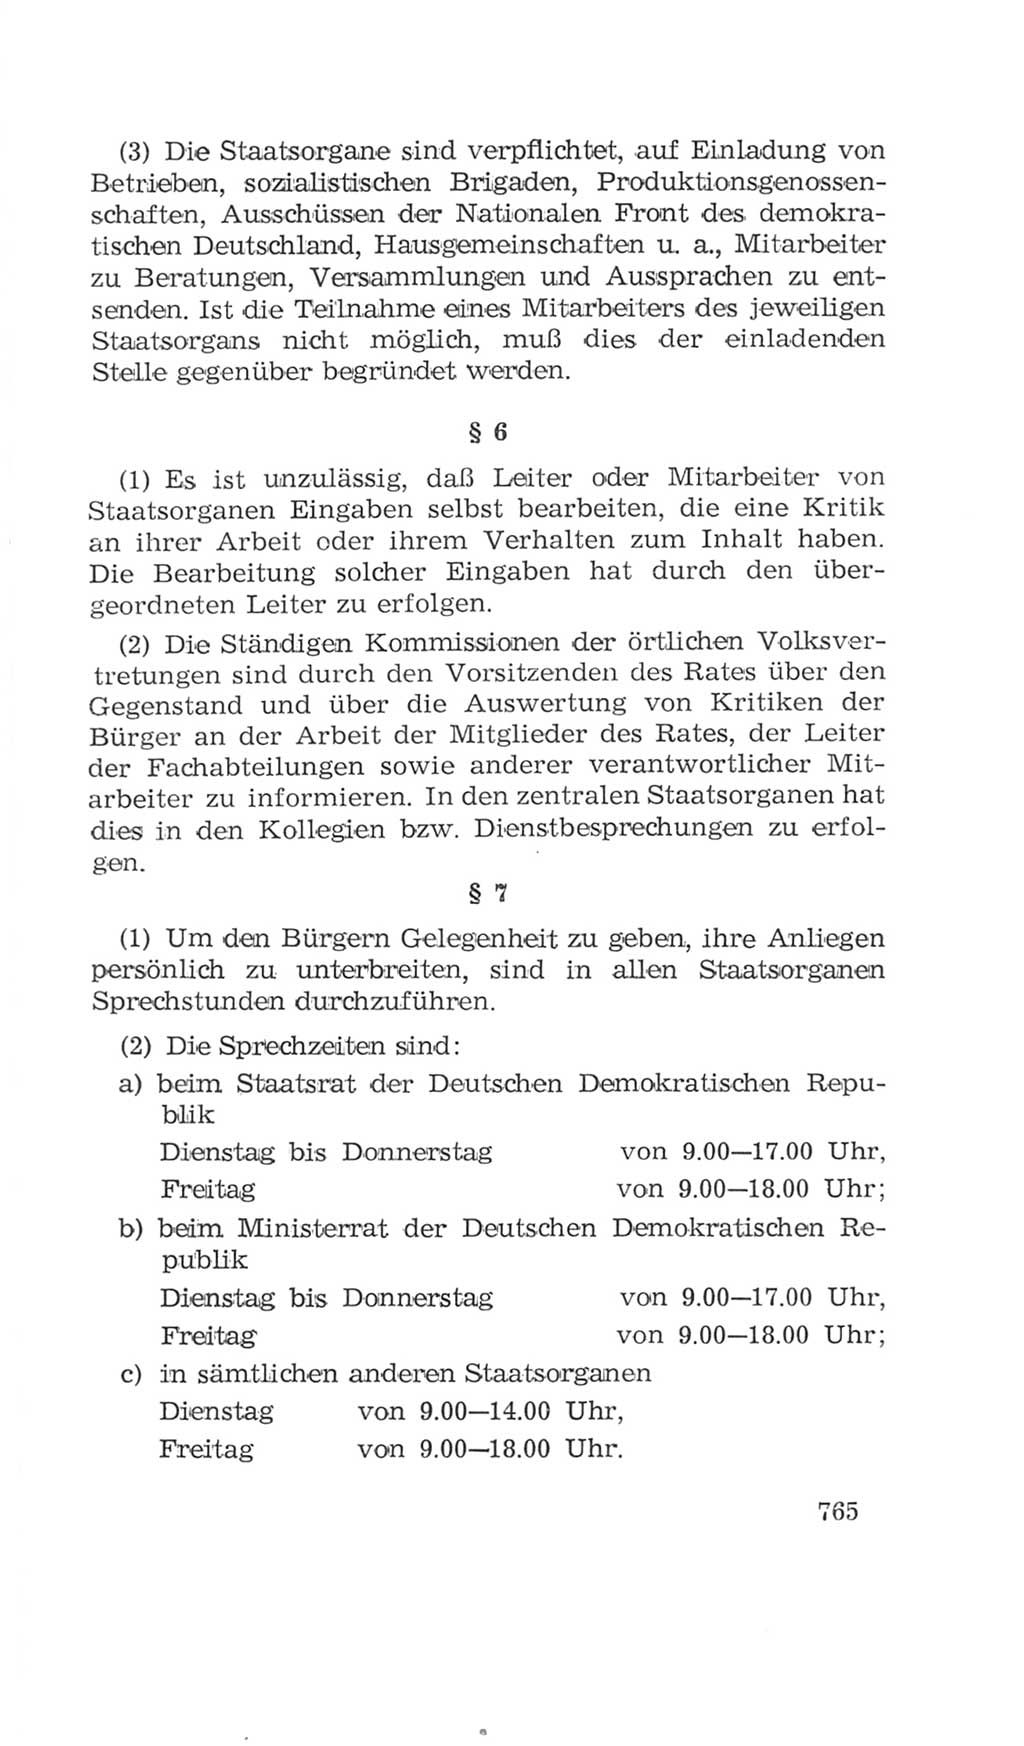 Volkskammer (VK) der Deutschen Demokratischen Republik (DDR), 4. Wahlperiode 1963-1967, Seite 765 (VK. DDR 4. WP. 1963-1967, S. 765)